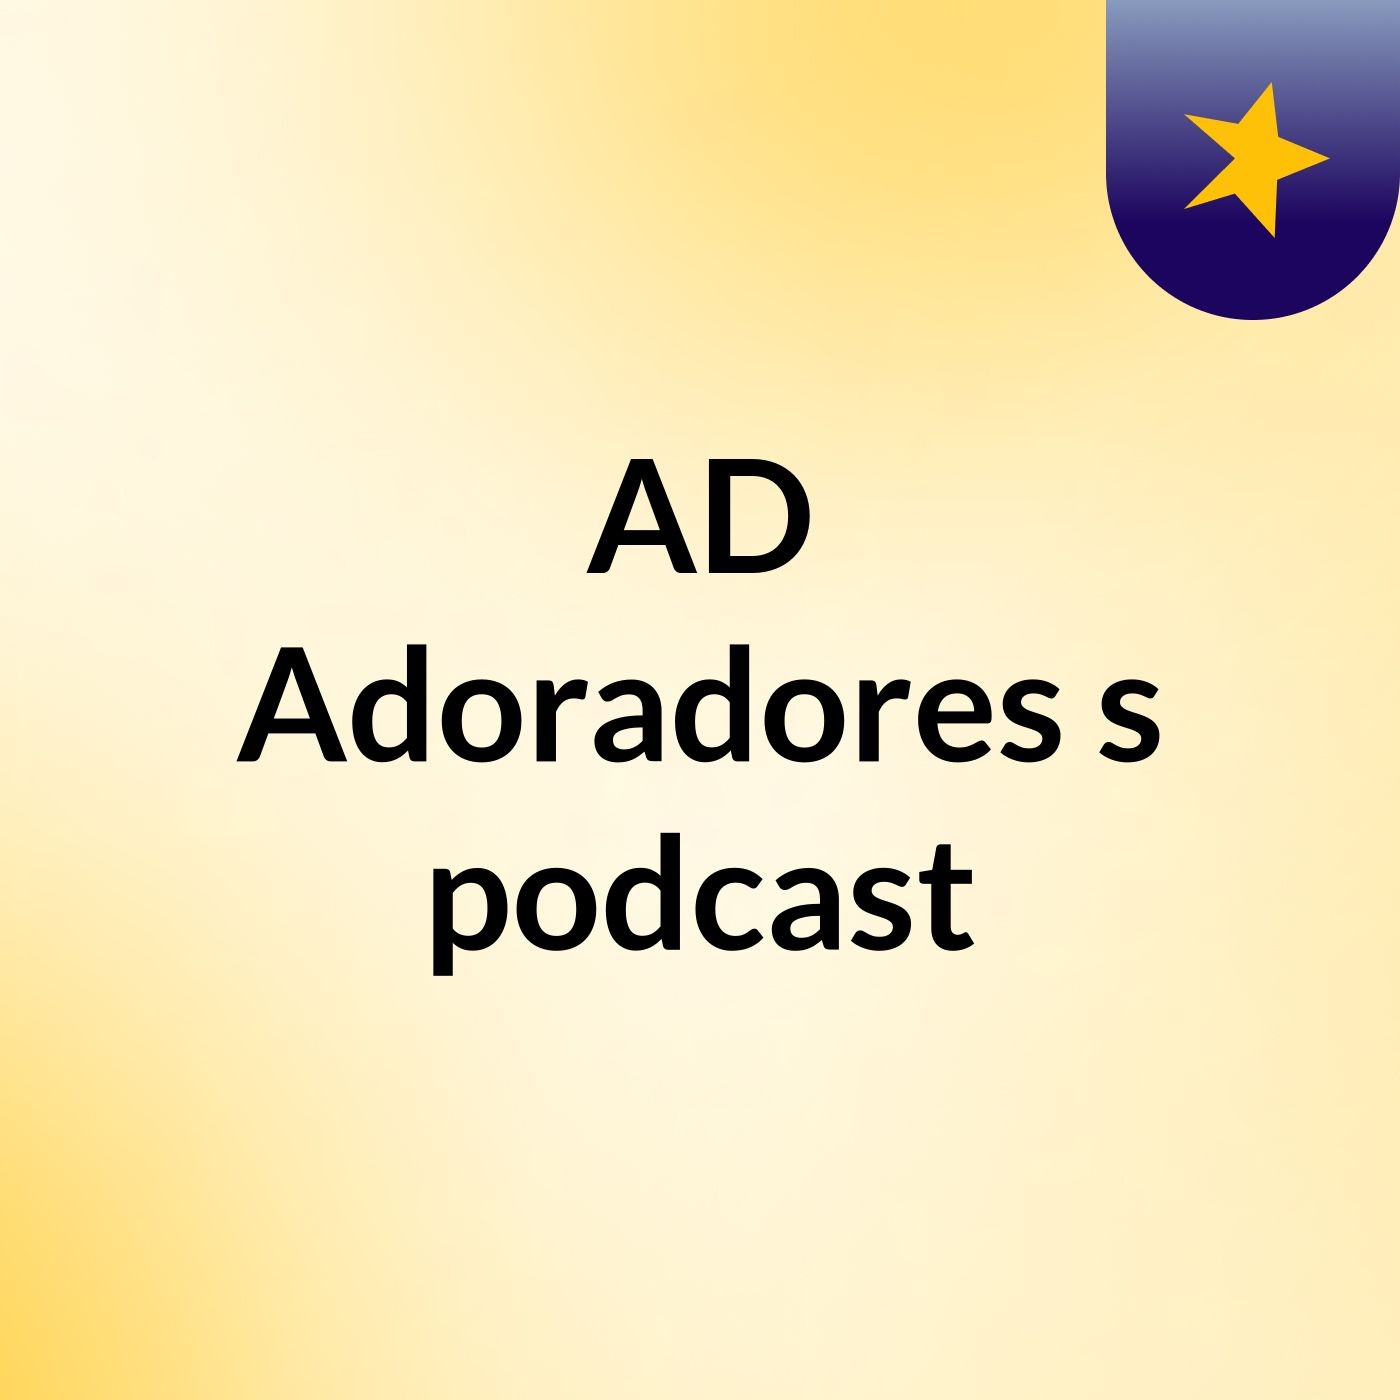 AD Adoradores's podcast